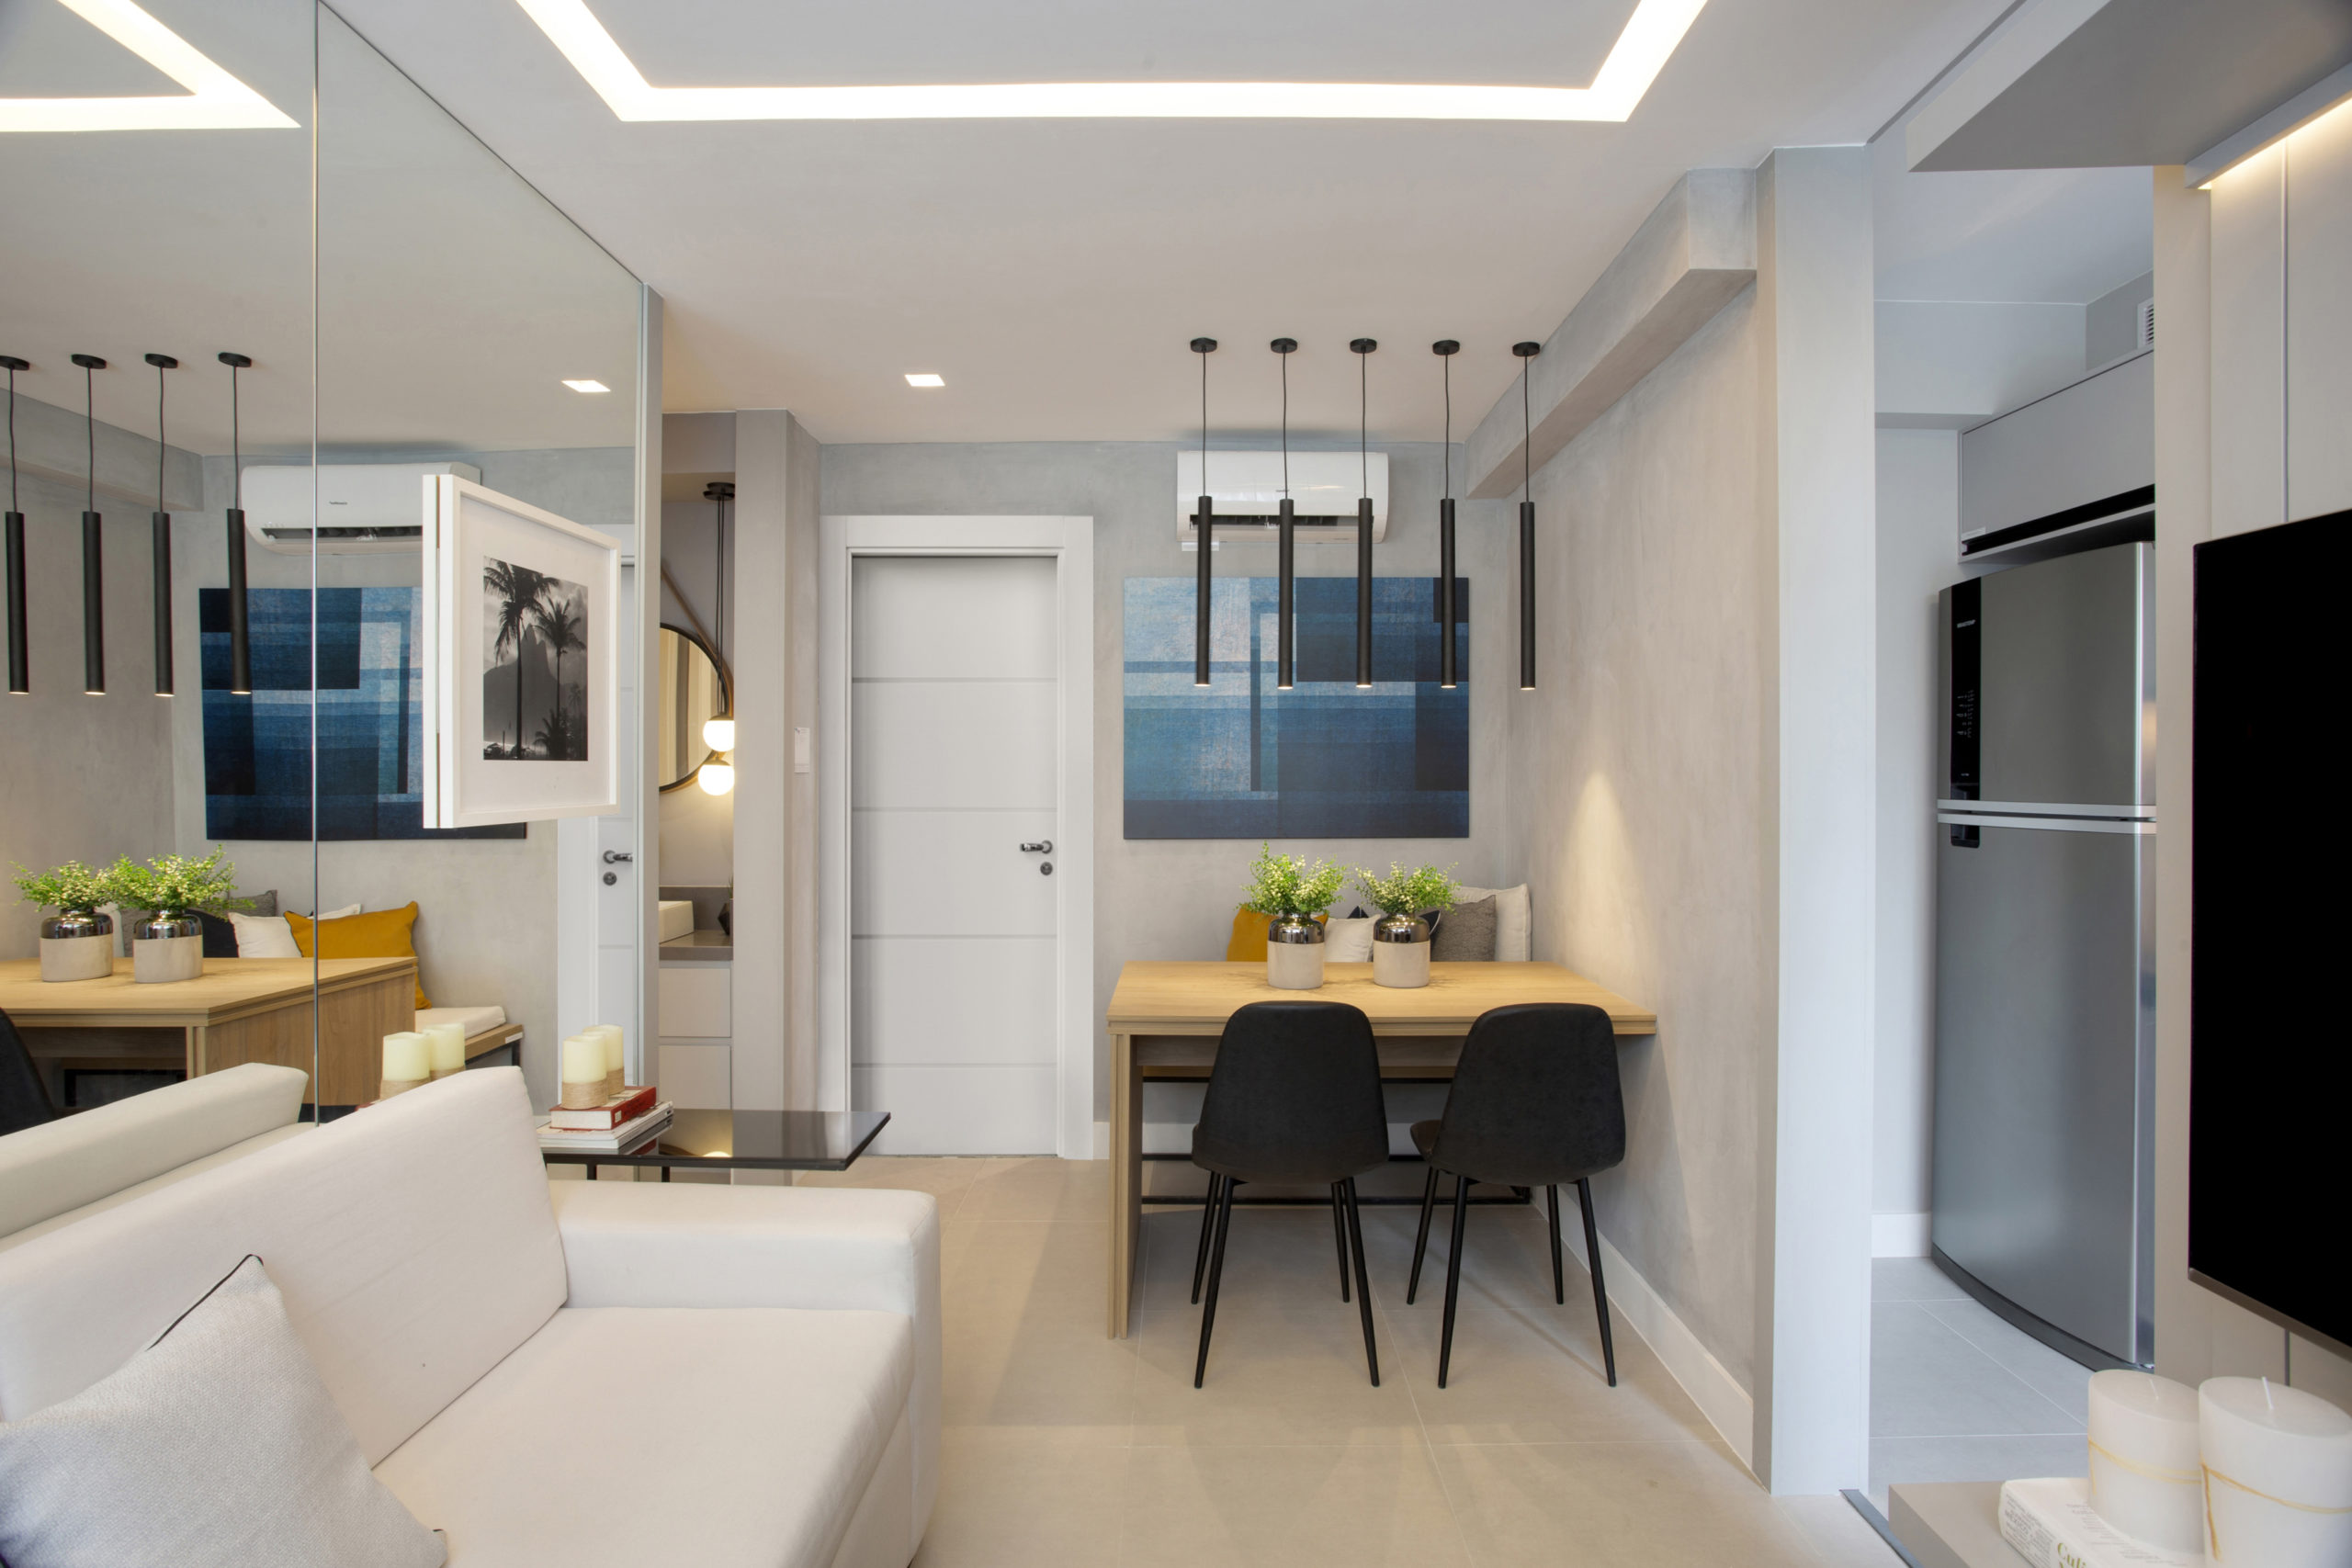 Pequeno apartamento de 27m² em Piedade, Zona Norte do Rio de Janeiro, prova que é possível viver com conforto e praticidade em espaços reduzidos. Sala integrada e espelho na parede